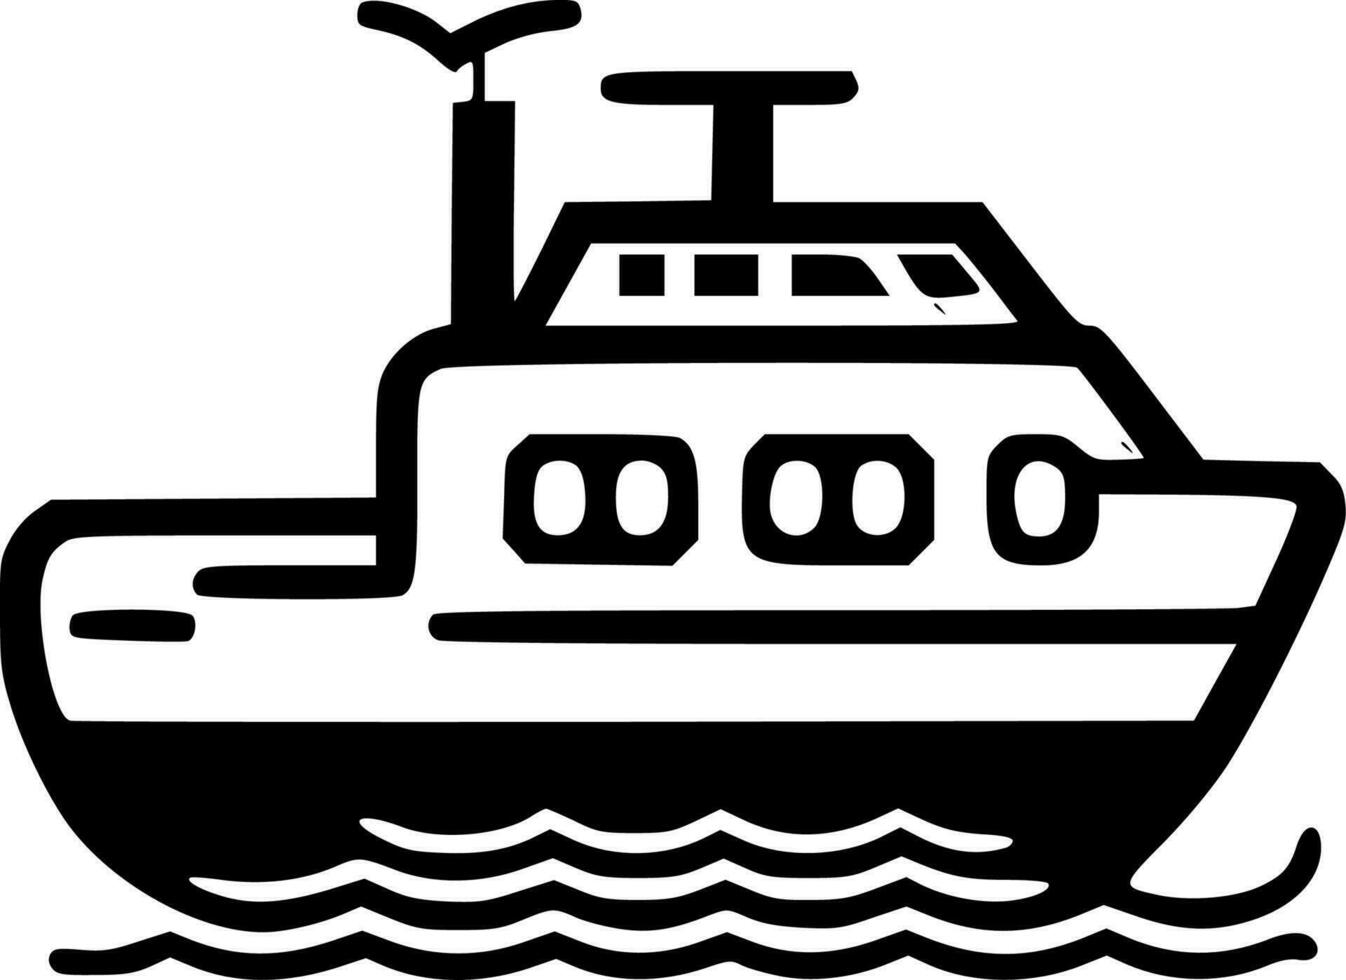 båt - svart och vit isolerat ikon - vektor illustration